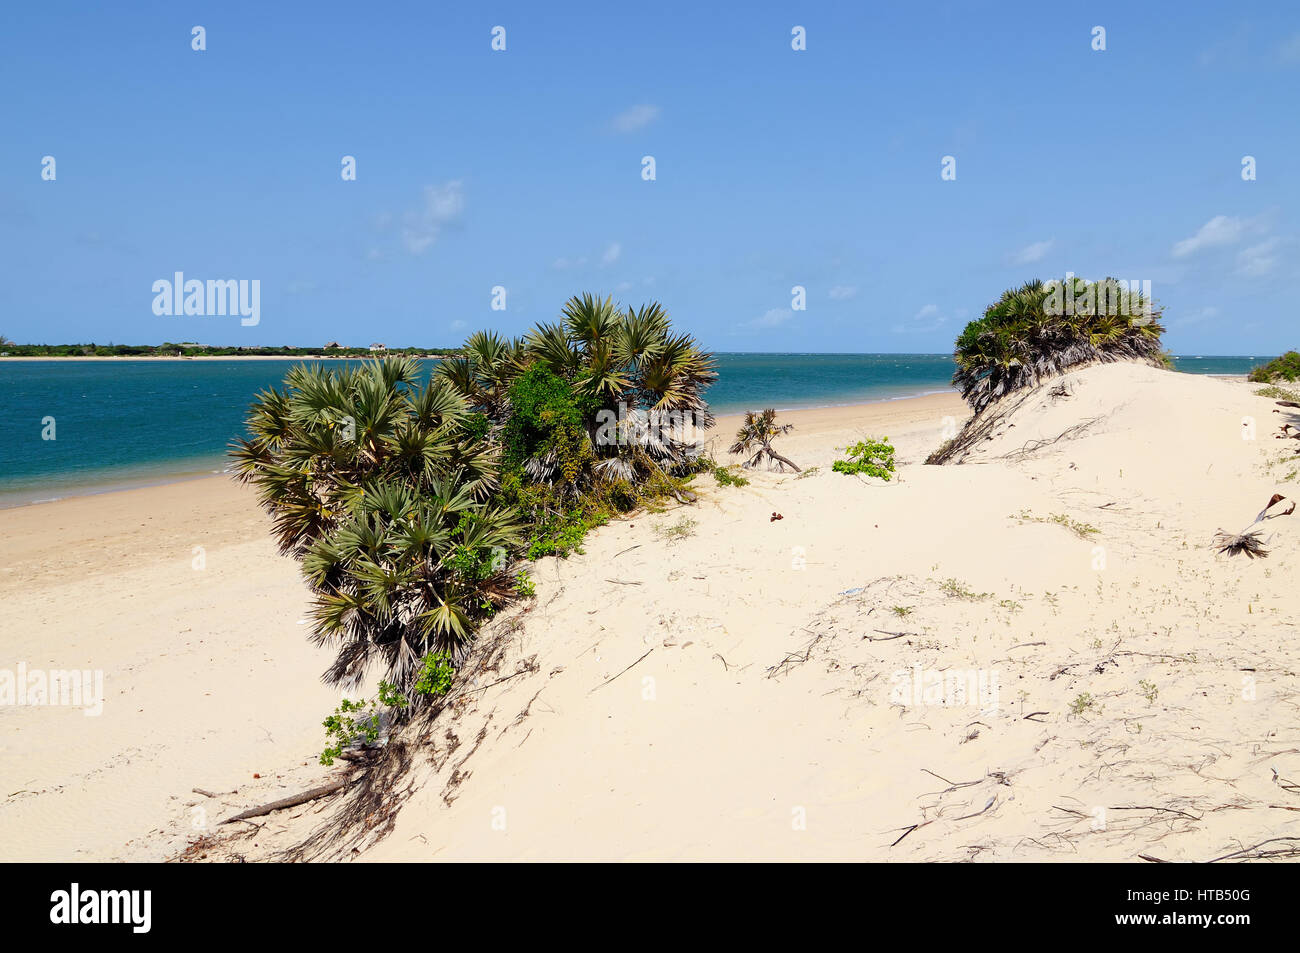 Kenya, beau plage de sable sur l'archipelag lamu Banque D'Images